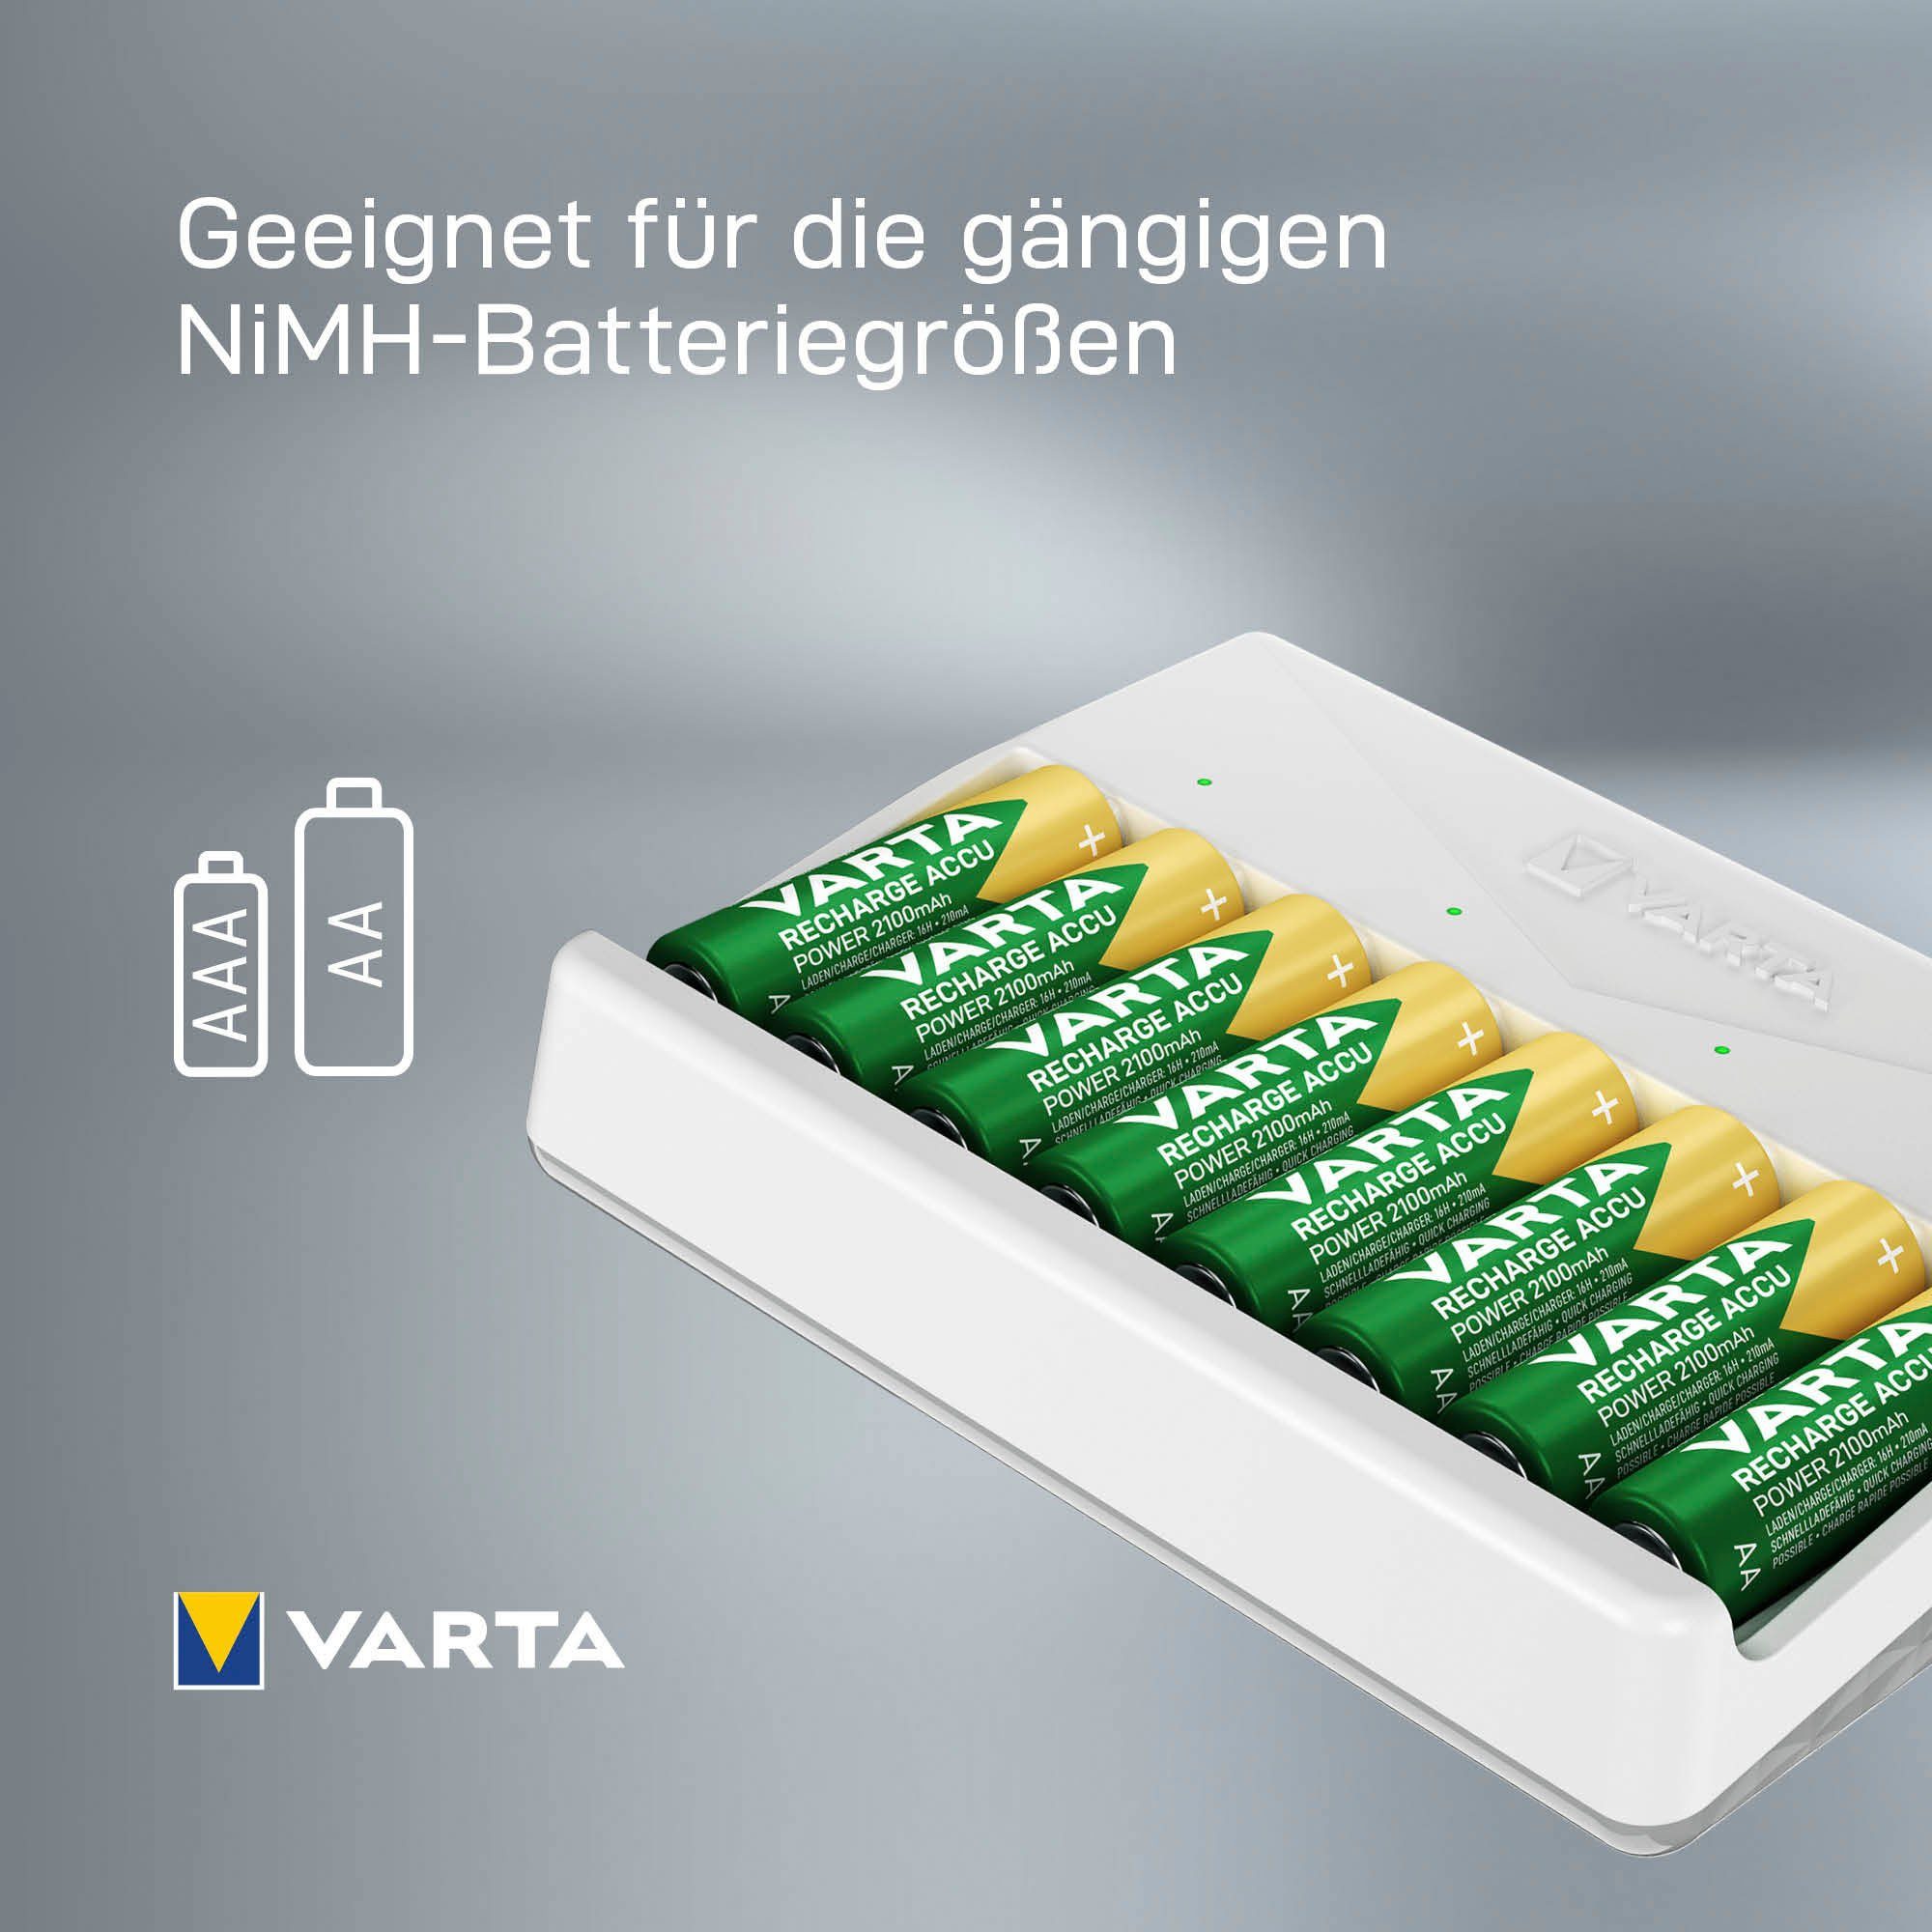 (1-tlg) Multi Charger Batterie-Ladegerät VARTA